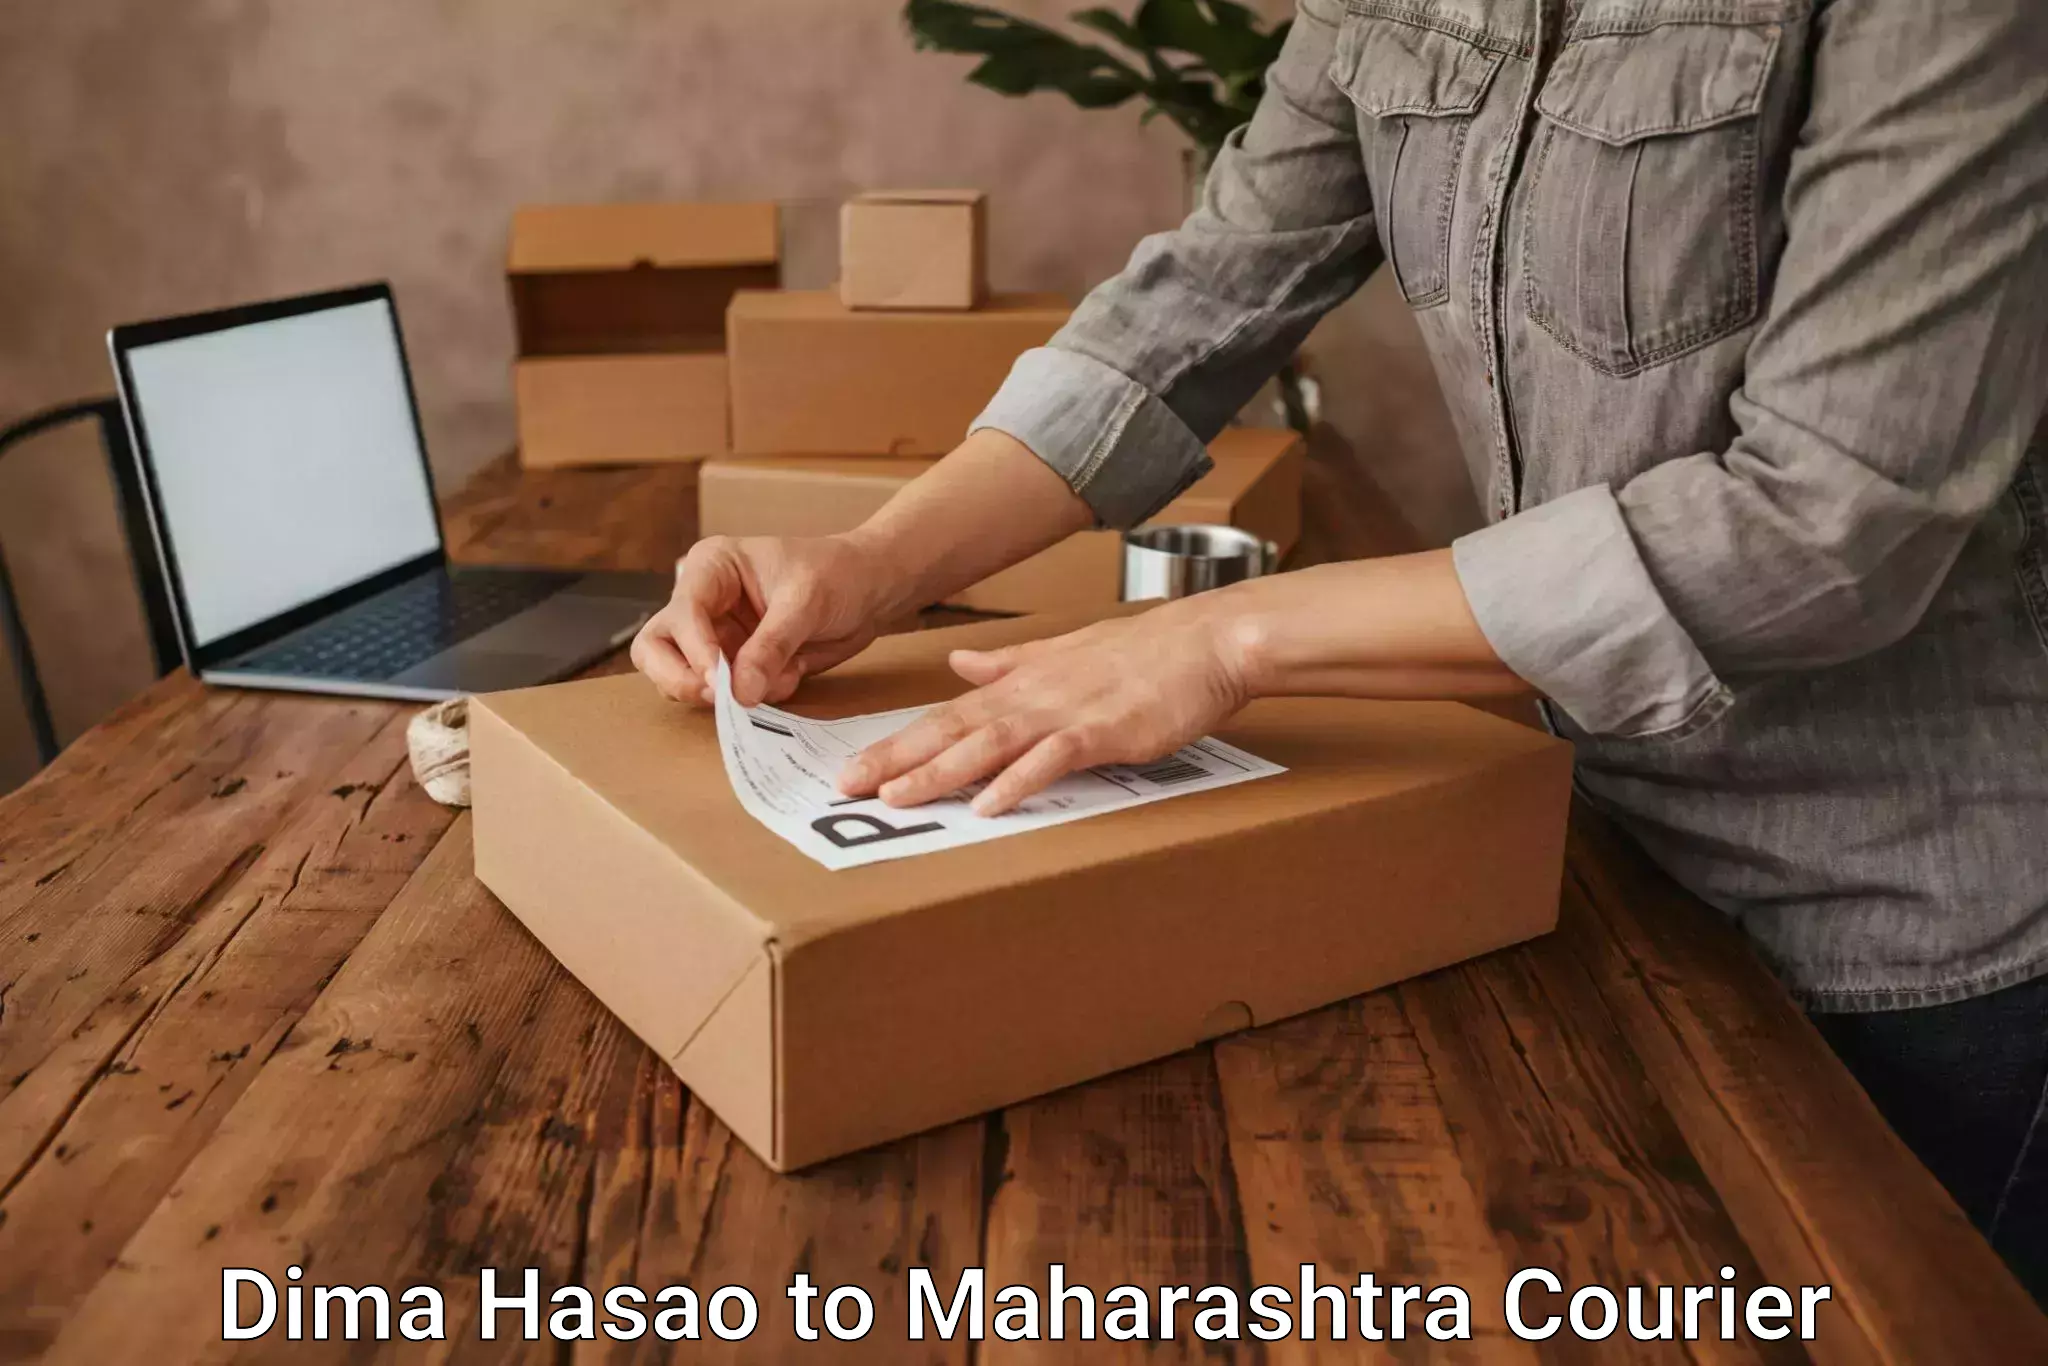 Express postal services Dima Hasao to Maharashtra